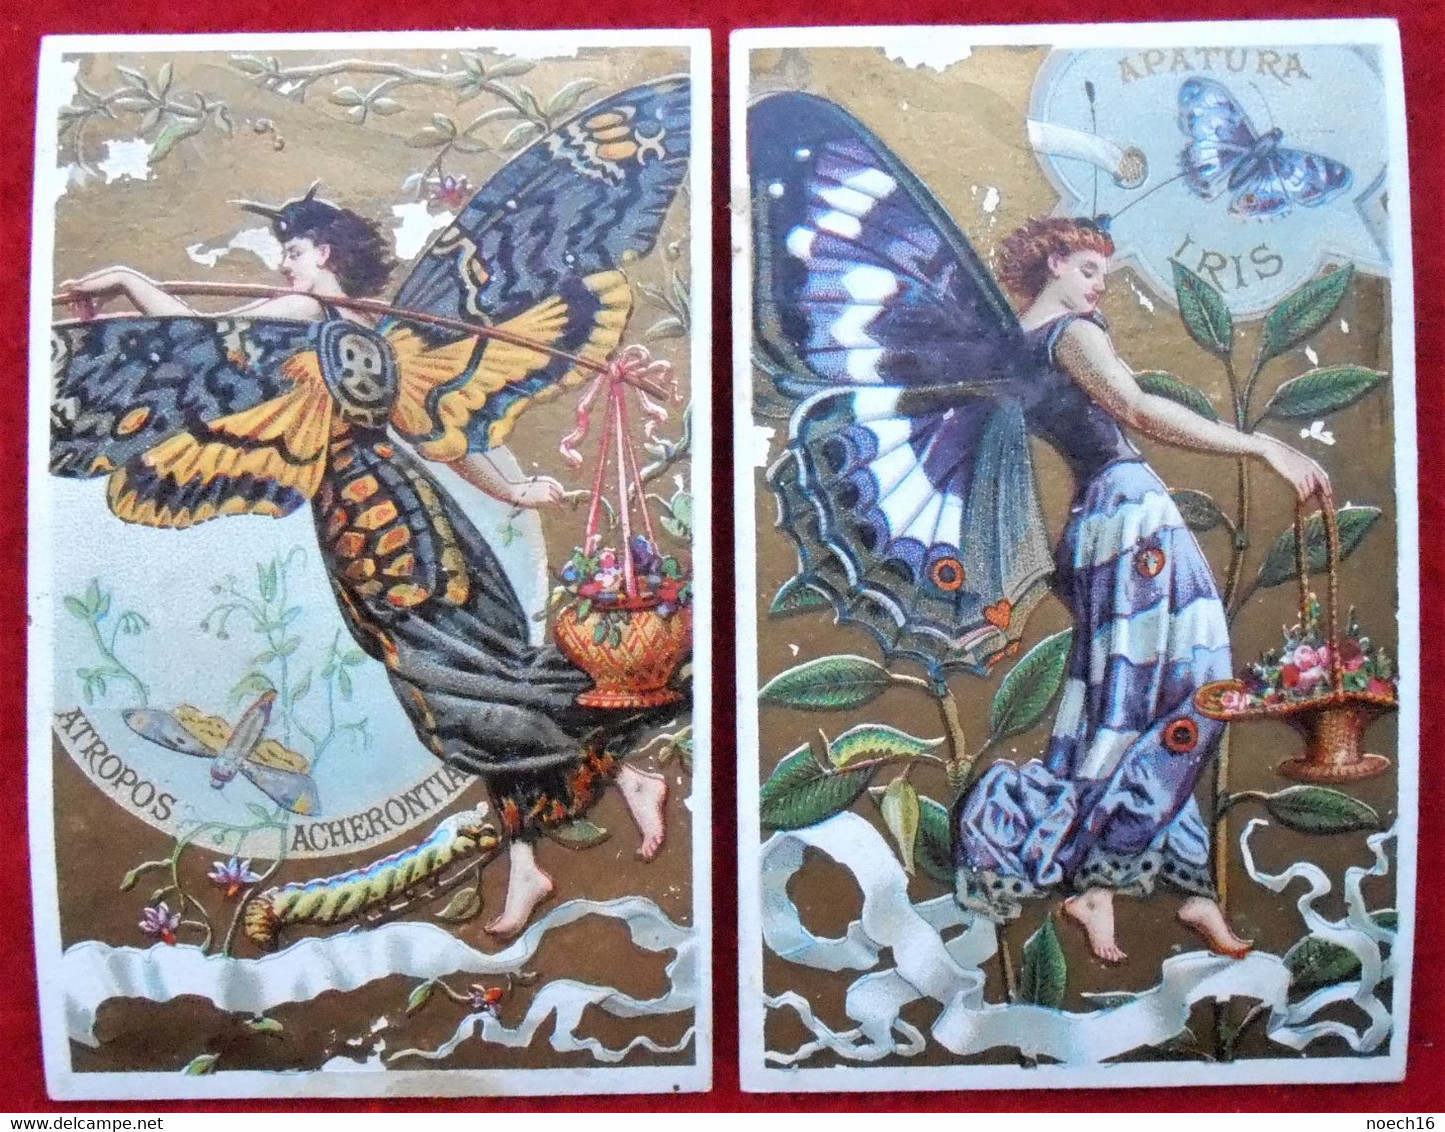 2 Chromos Dorés / Publicité. Femmes Papillons - Chicorée "A La Belle Jardinière". C. Bériot à Lille - Thé & Café